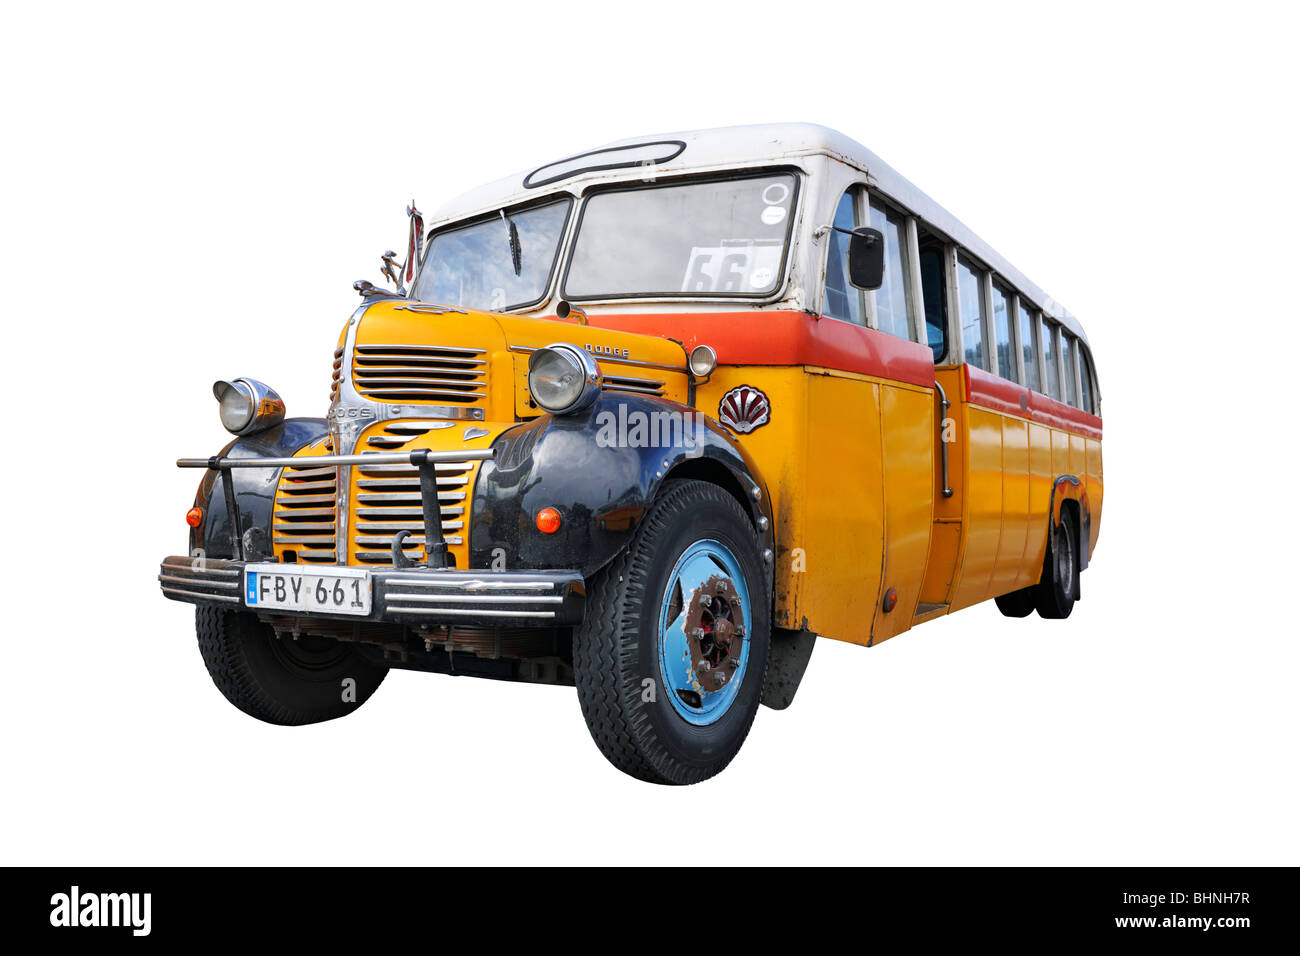 Maltese classic bus public transport Stock Photo